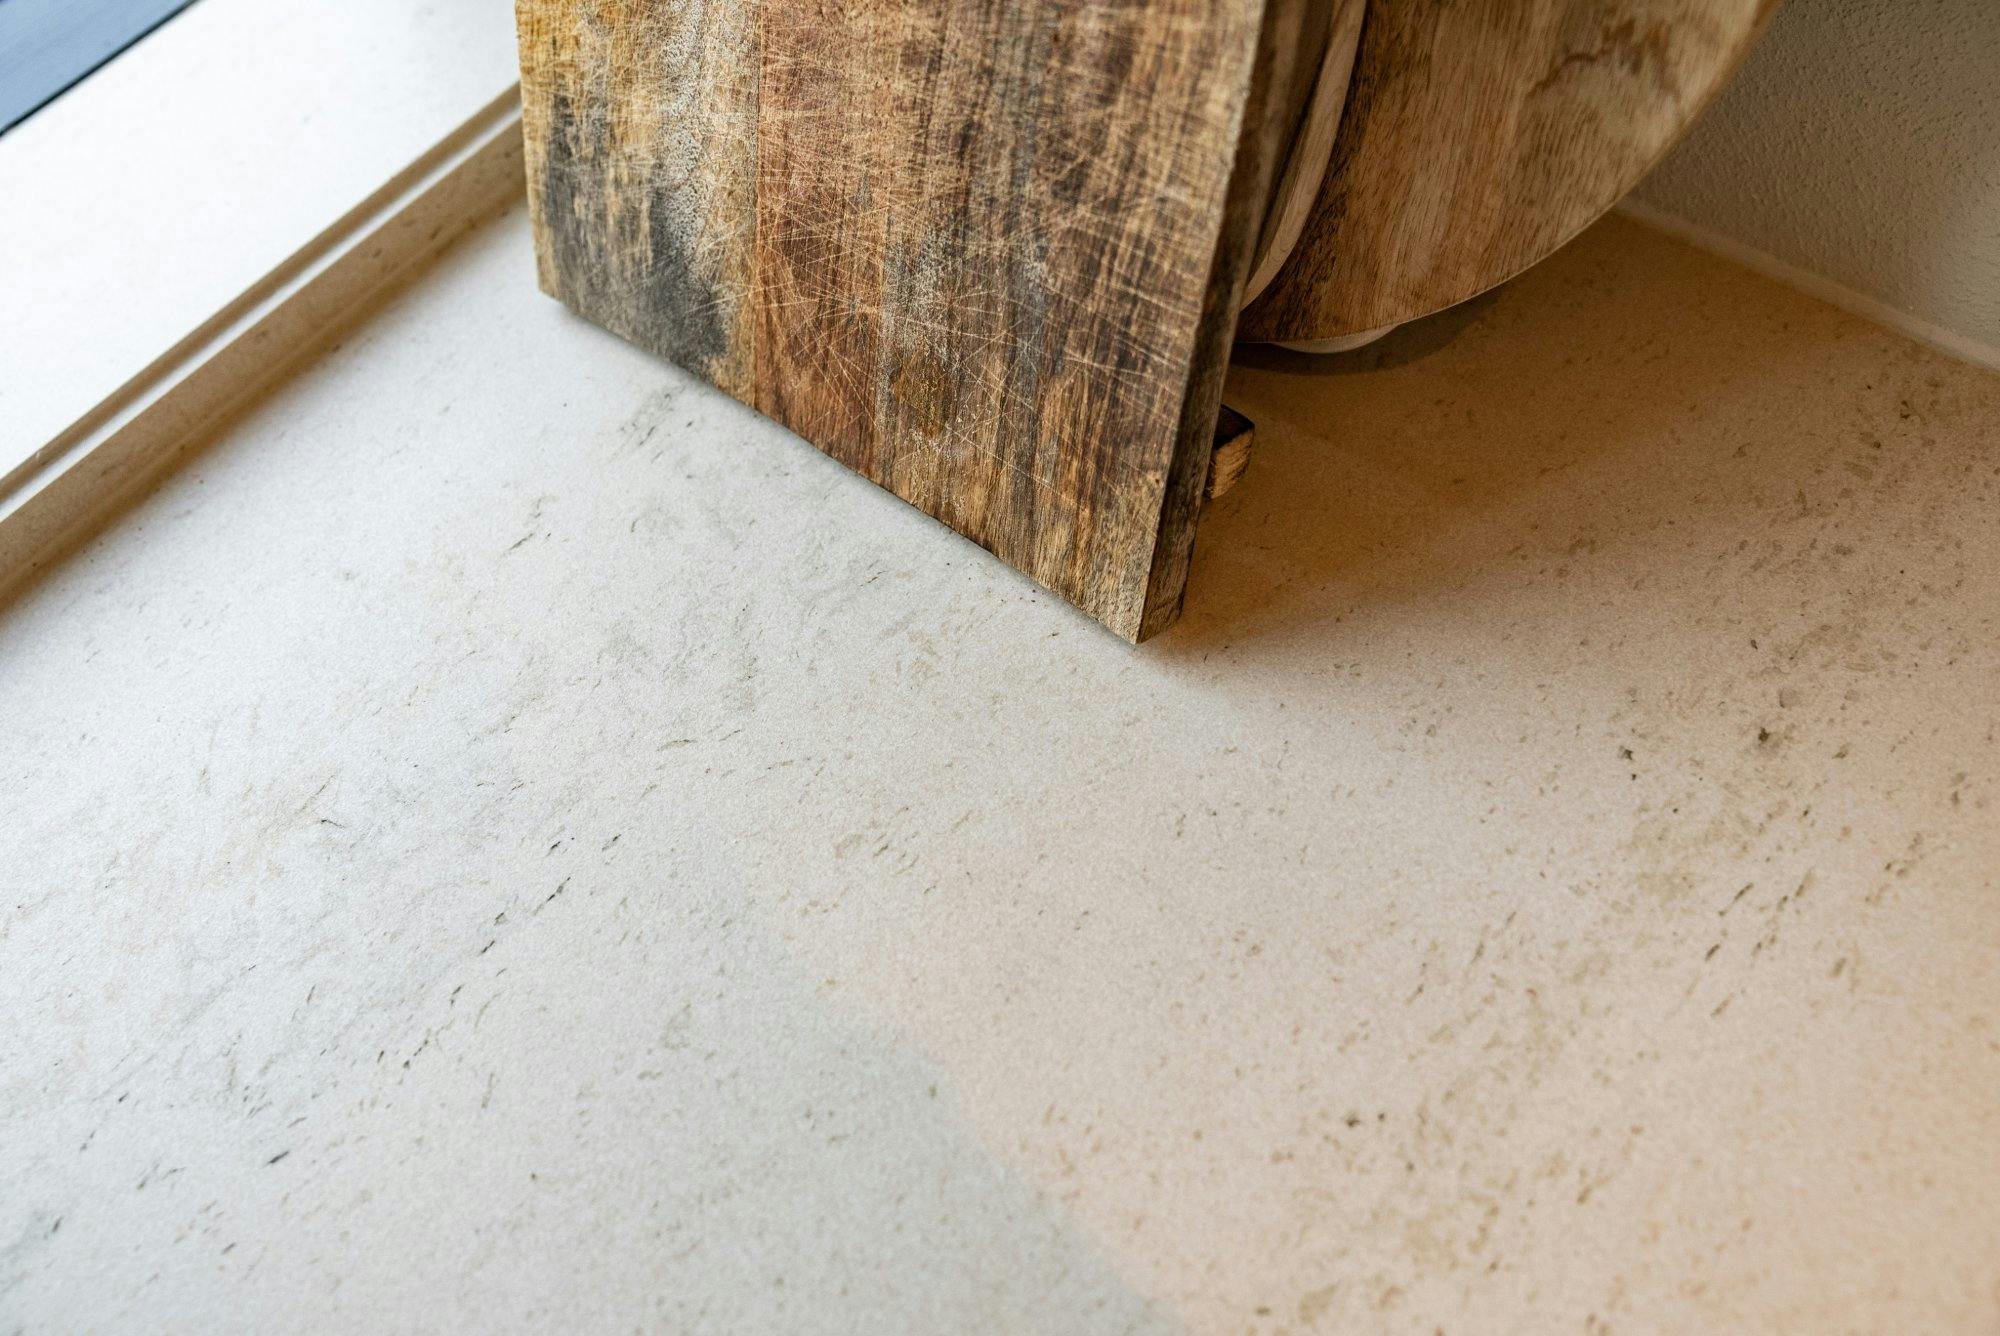 Numero immagine 36 della sezione corrente di A seamless worktop for a Nordic home renovated with love di Cosentino Italia